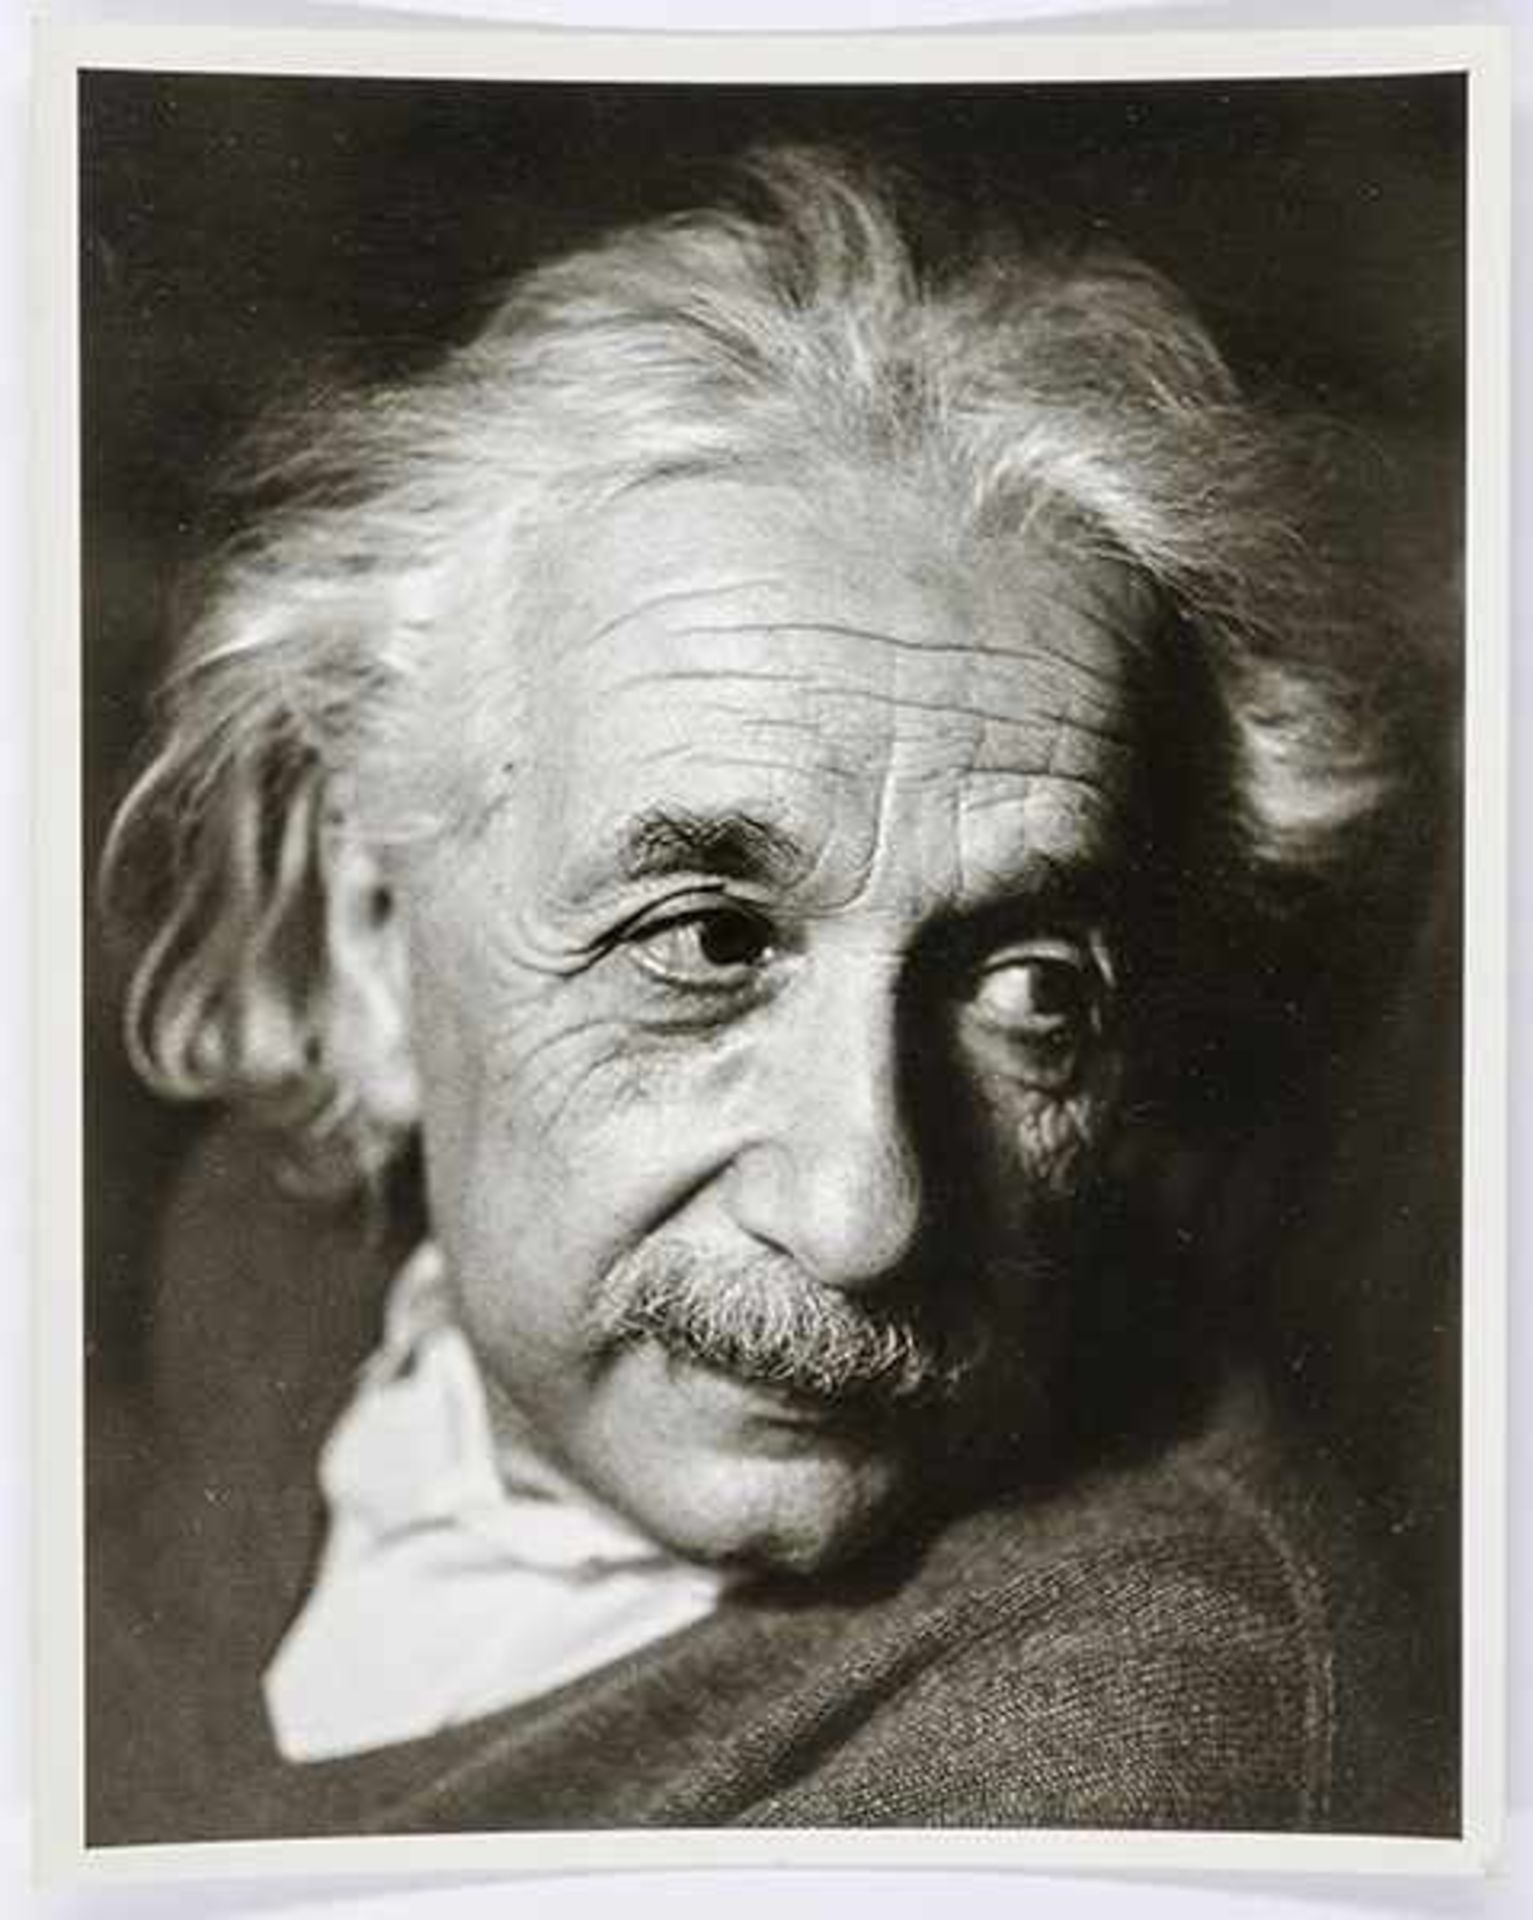 Haas, Robert. Albert Einstein. Princeton. Original-Photographie. Vintage. Bromsilbergelatineabzug. - Bild 3 aus 3